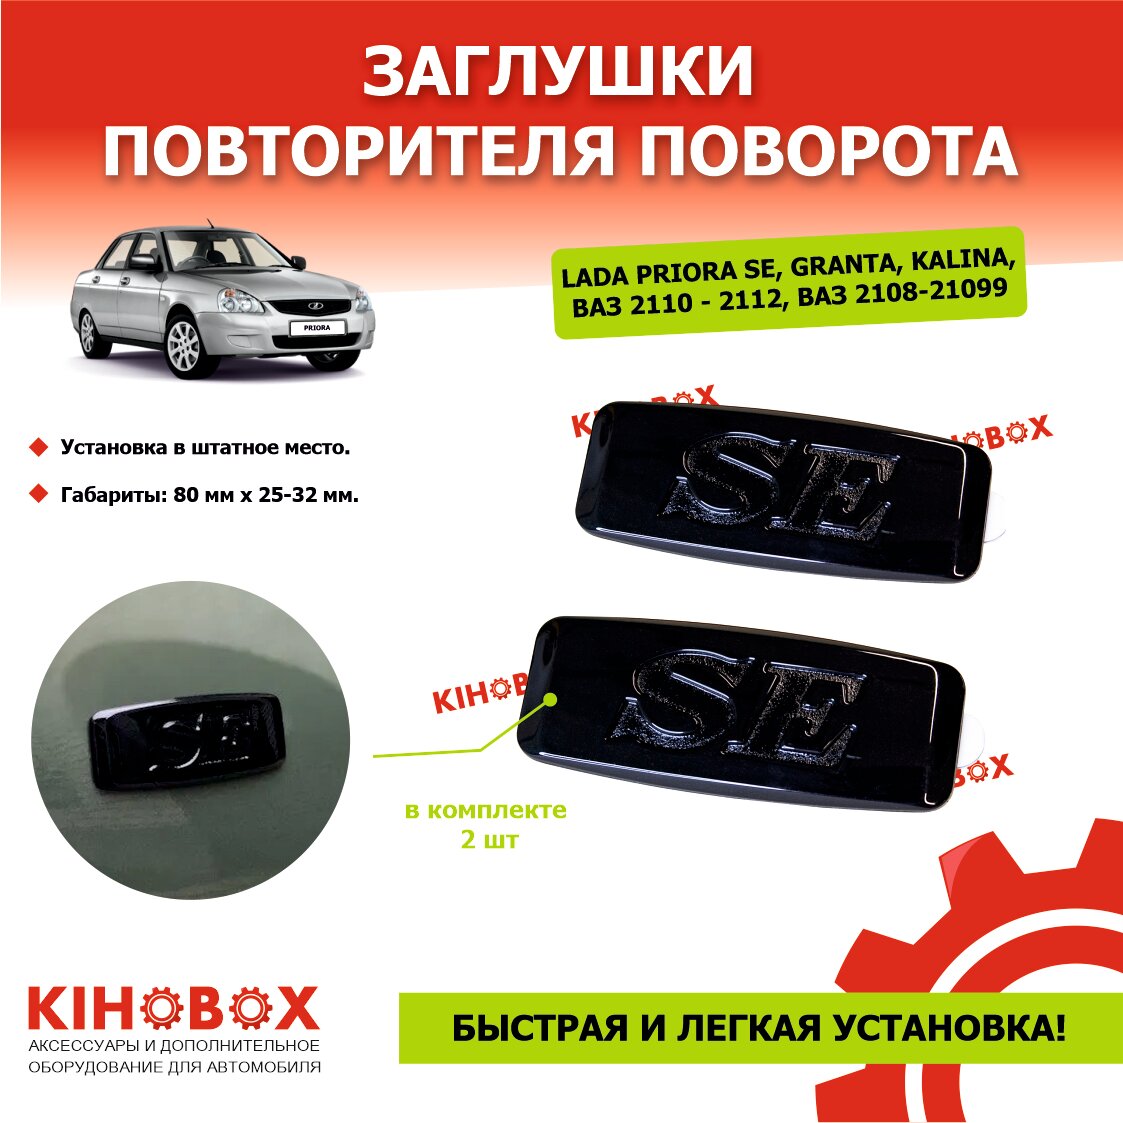 Заглушки повторителя поворота Лада Приора SE (весь модельный ряд) черные 2 шт KIHOBOX АРТ 5524102